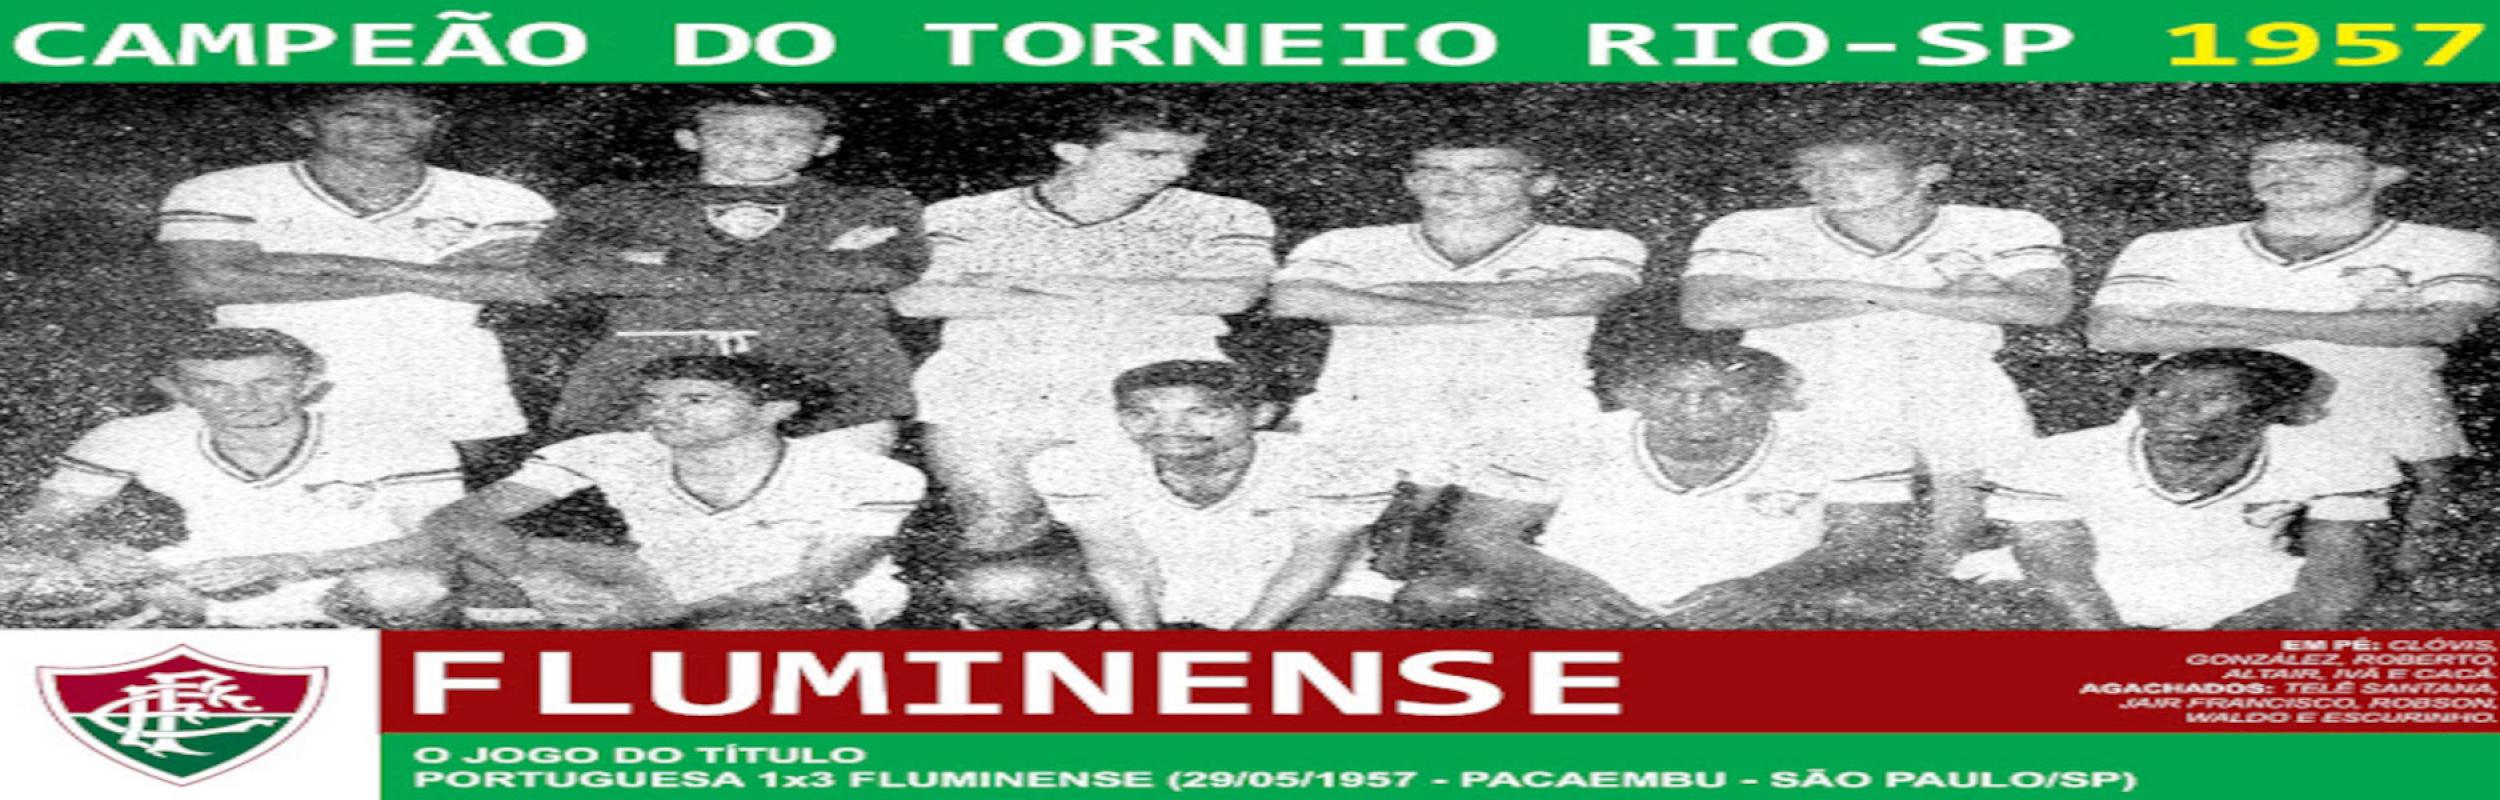 Torneio Rio-São Paulo 1957